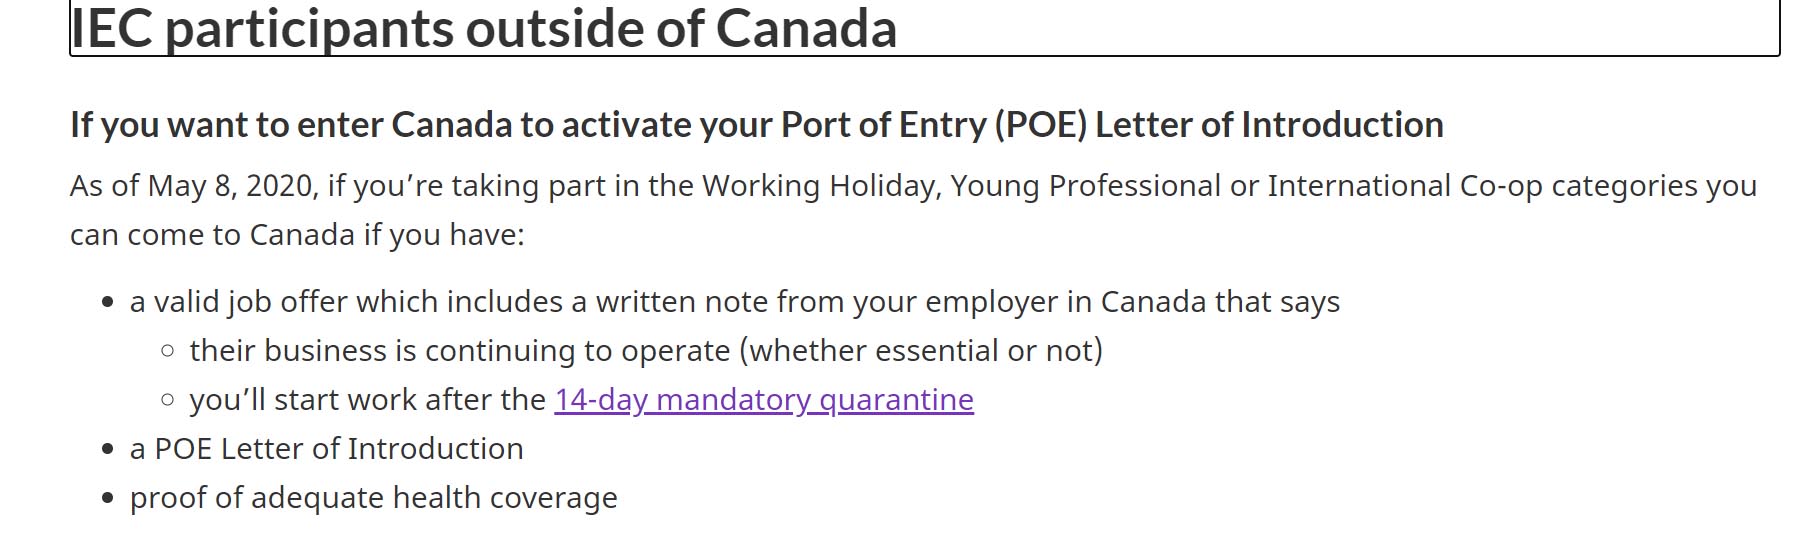 IEC uchazeči - job offer do Kanady